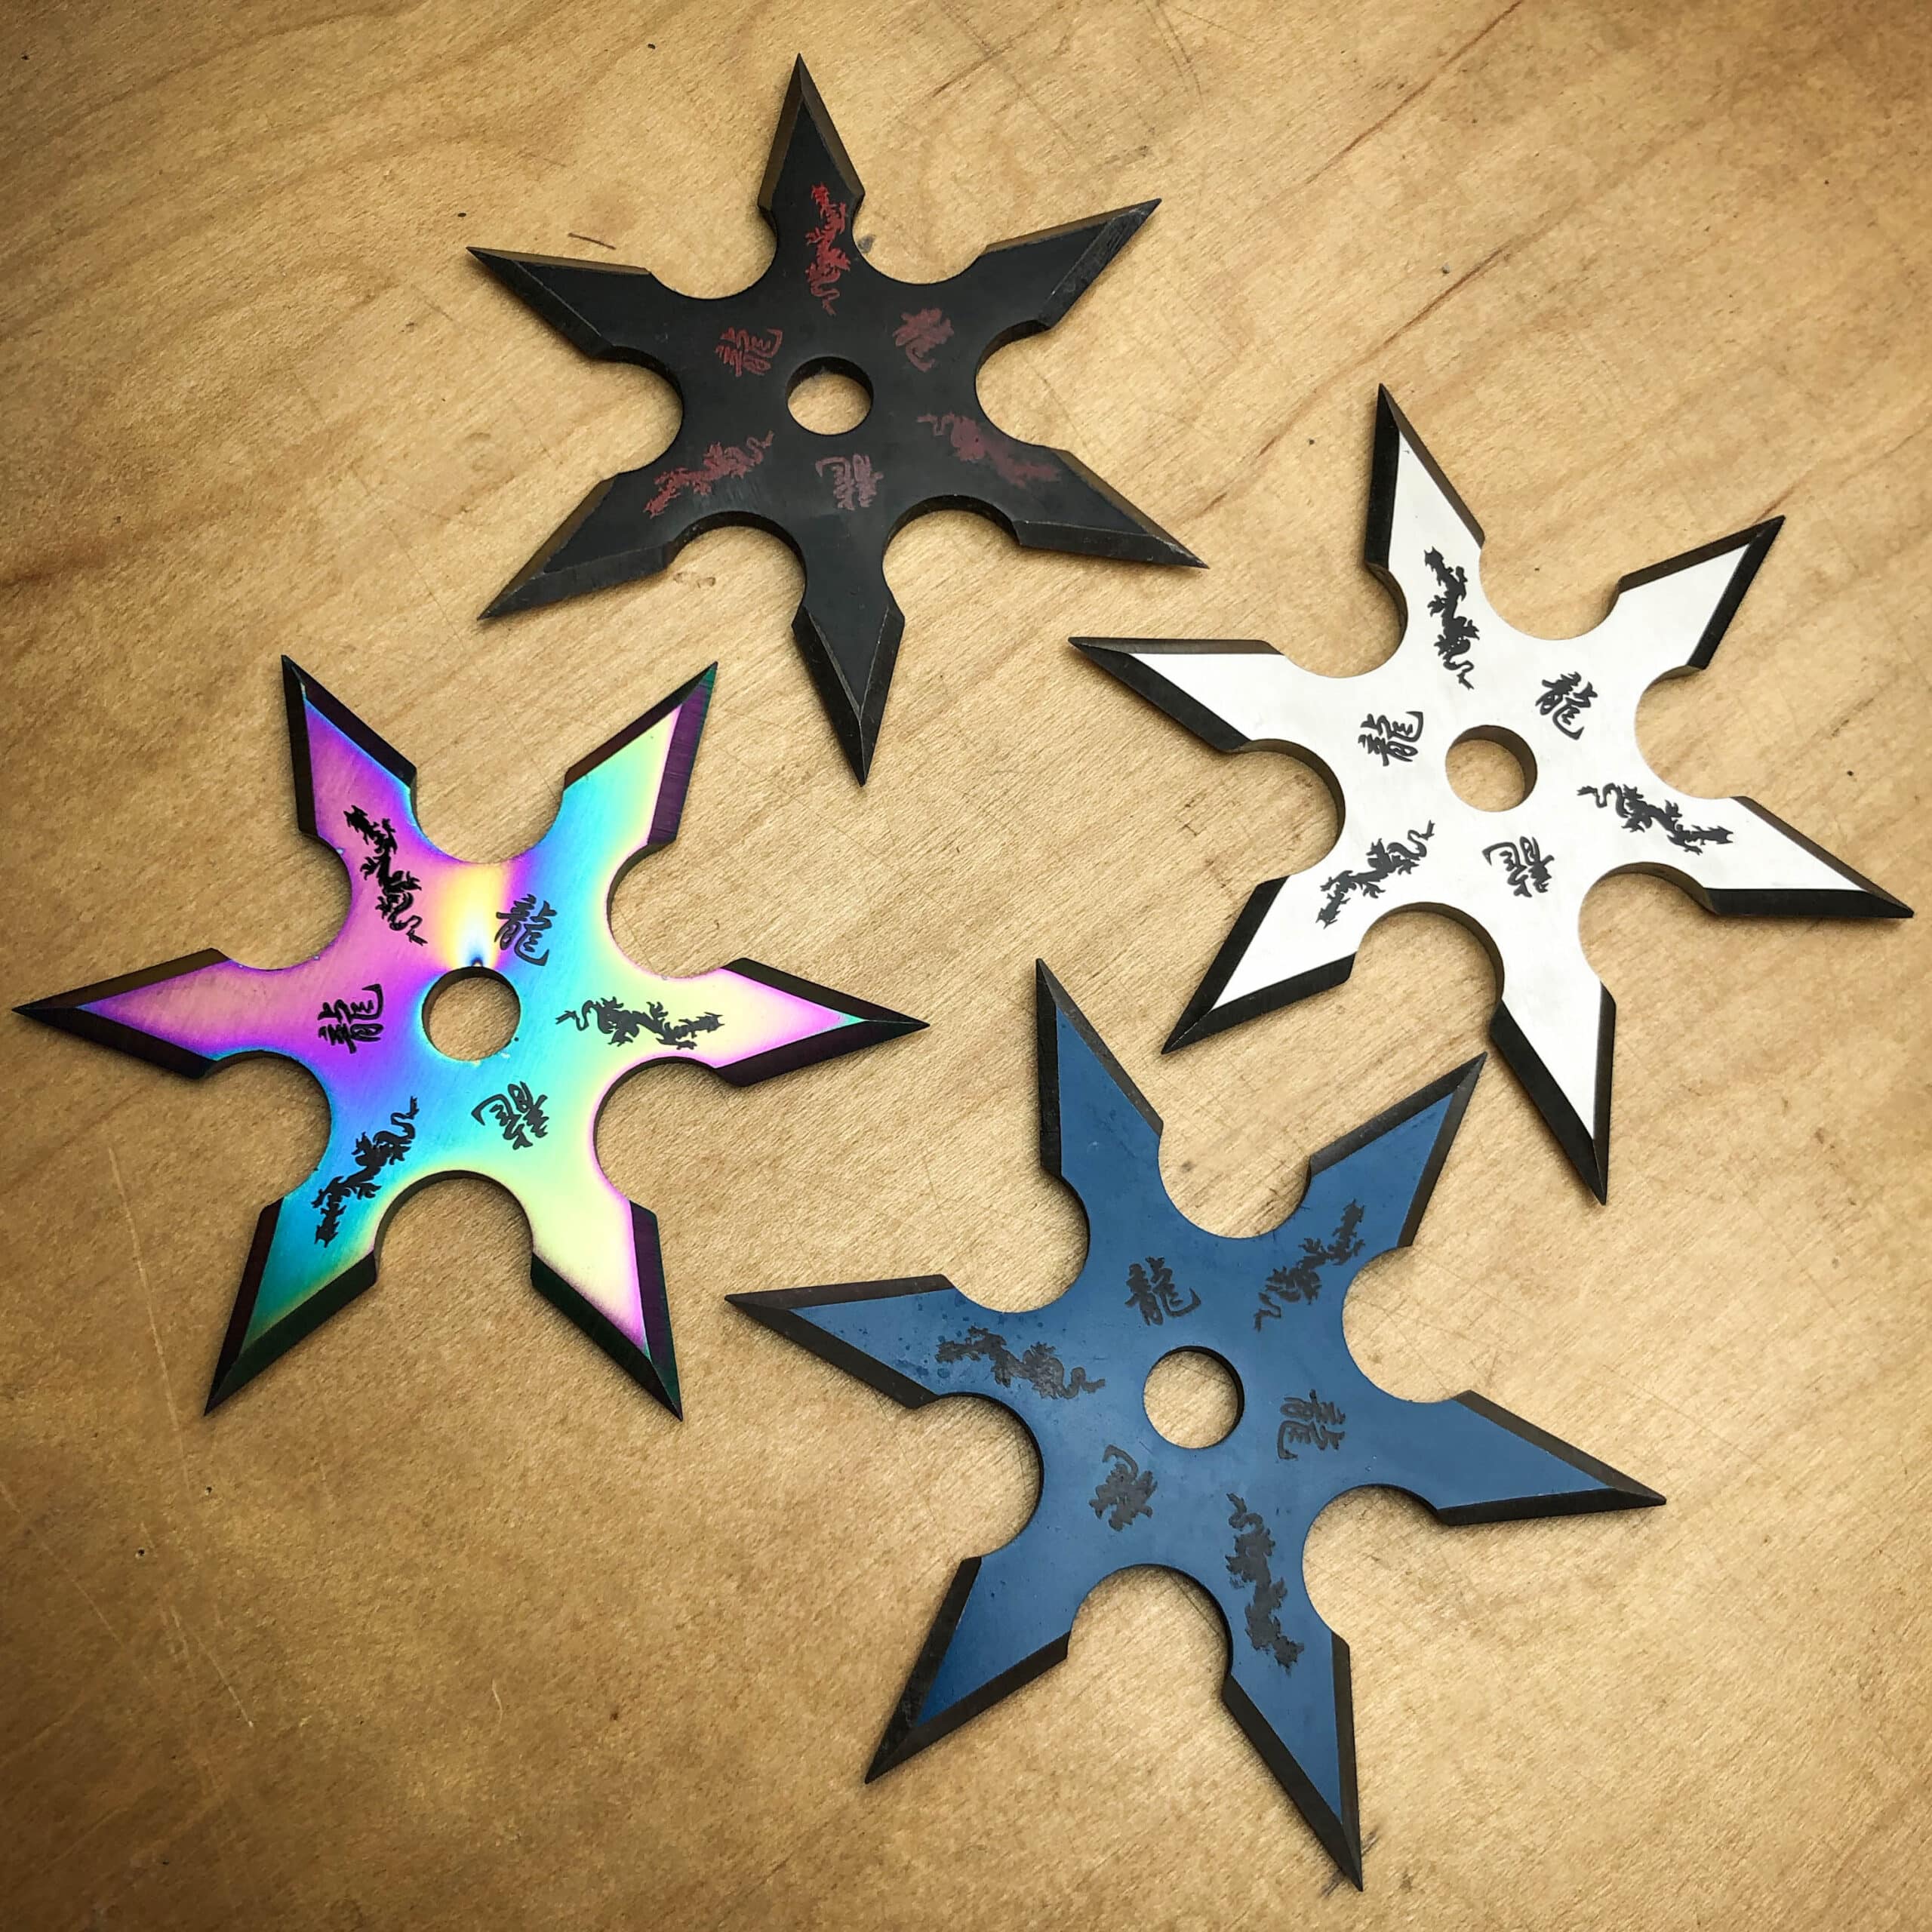 Ninja Stars - Throwing Stars & Ninja Shuriken Sets 